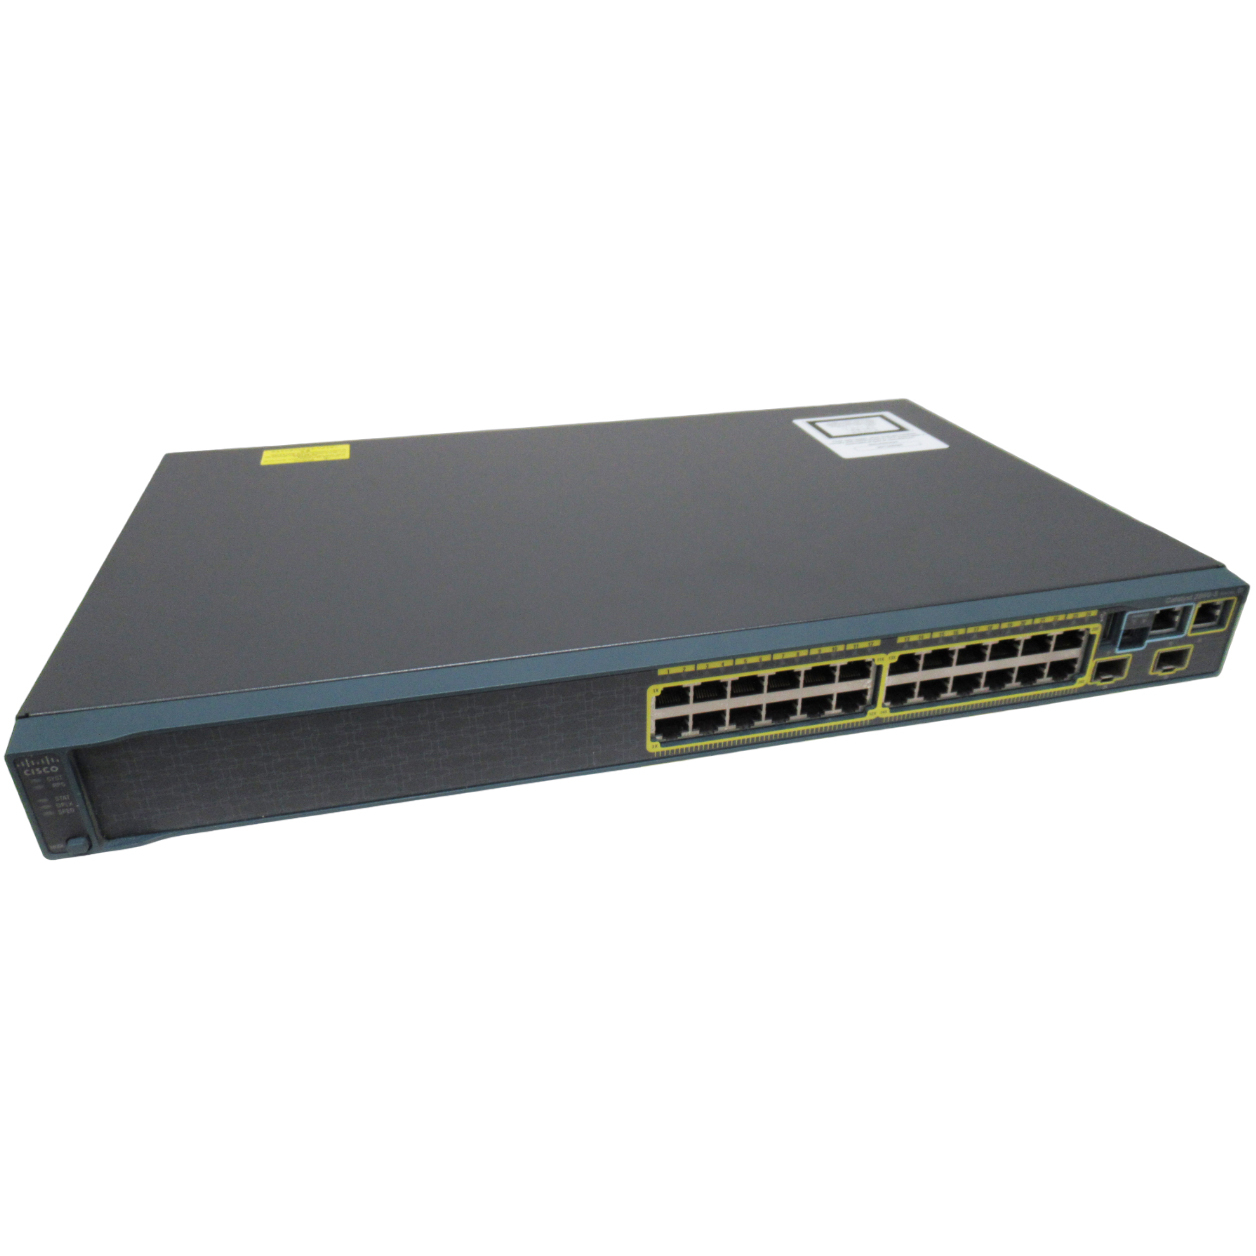 Cisco WS-C2960S-24TS-S